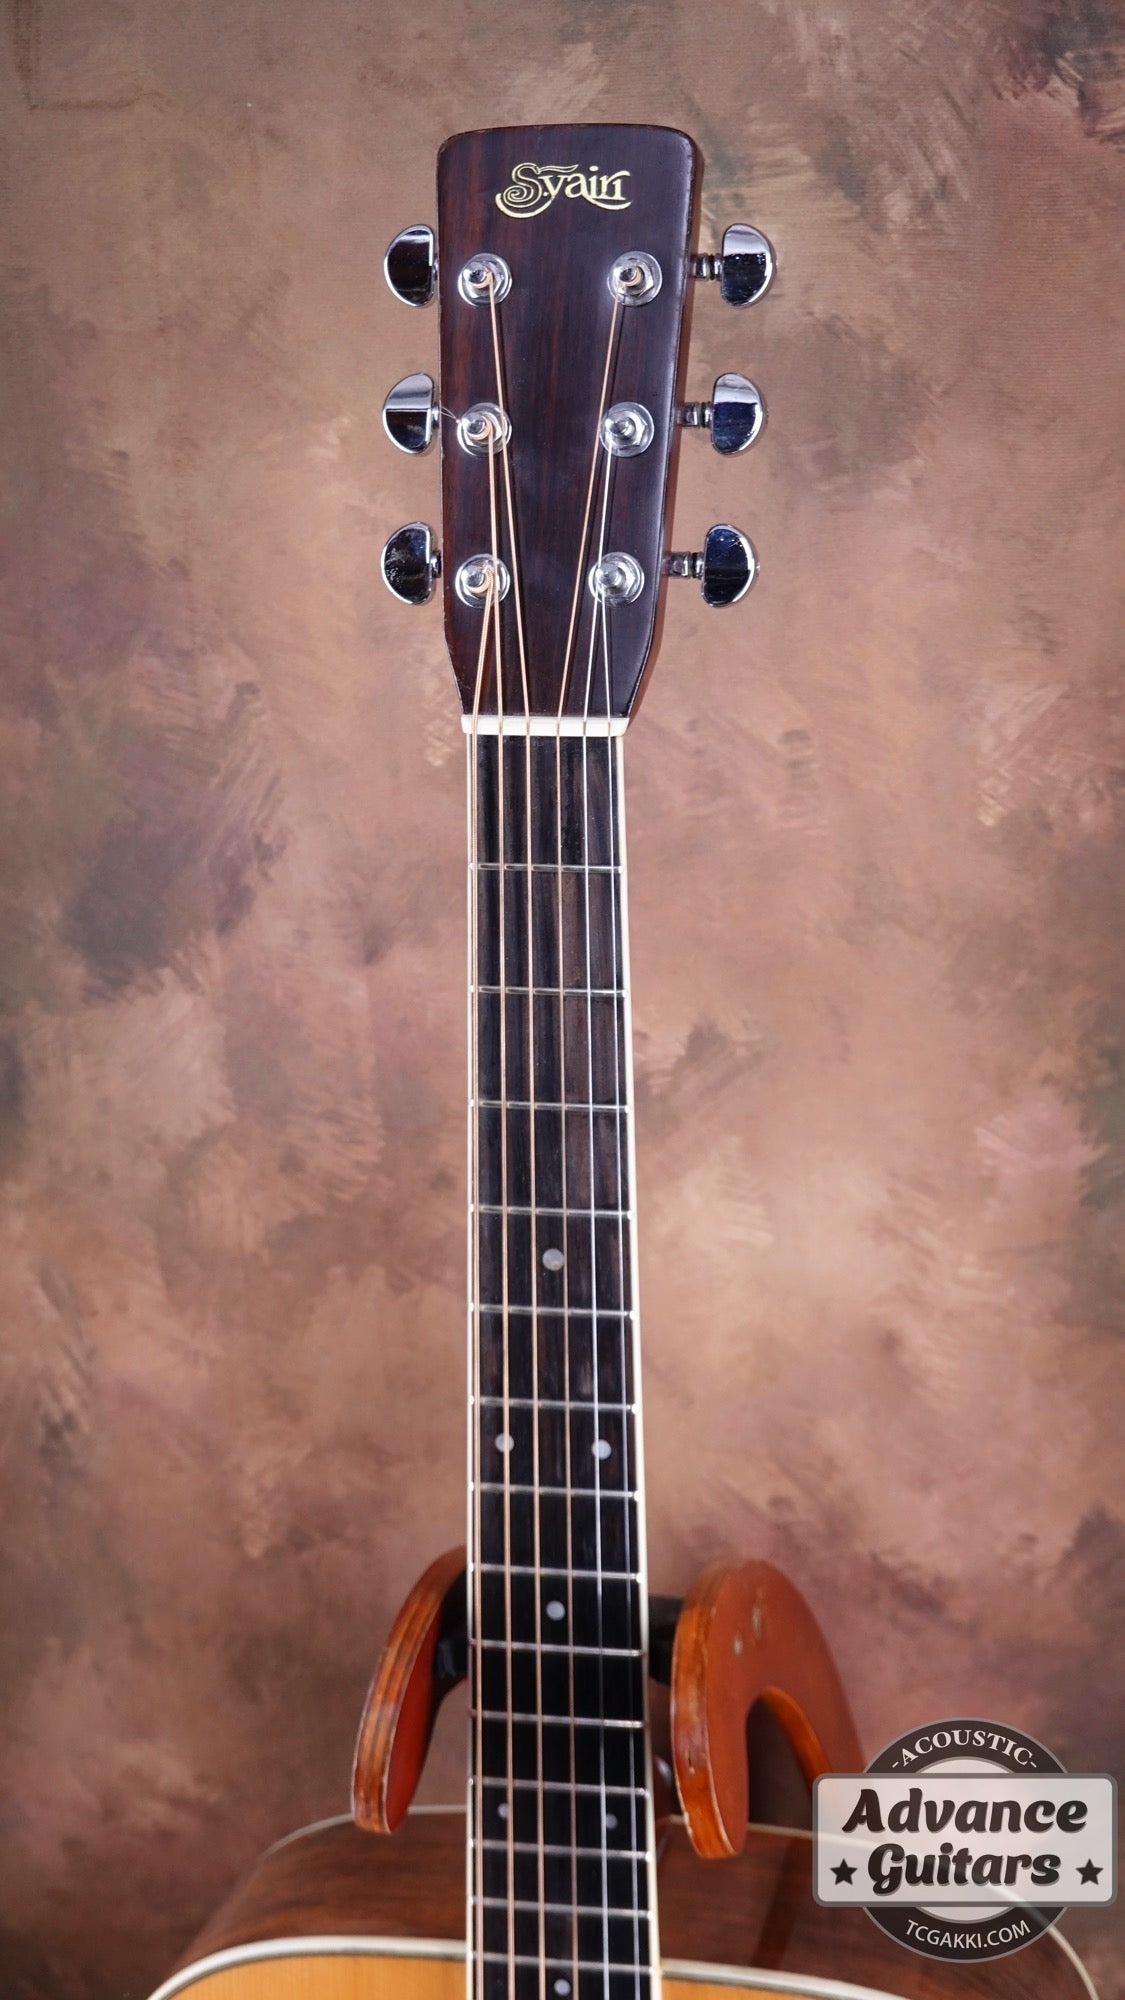 S.Yairi 1976 YD 303 1976 0 Guitar For Sale TCGAKKI